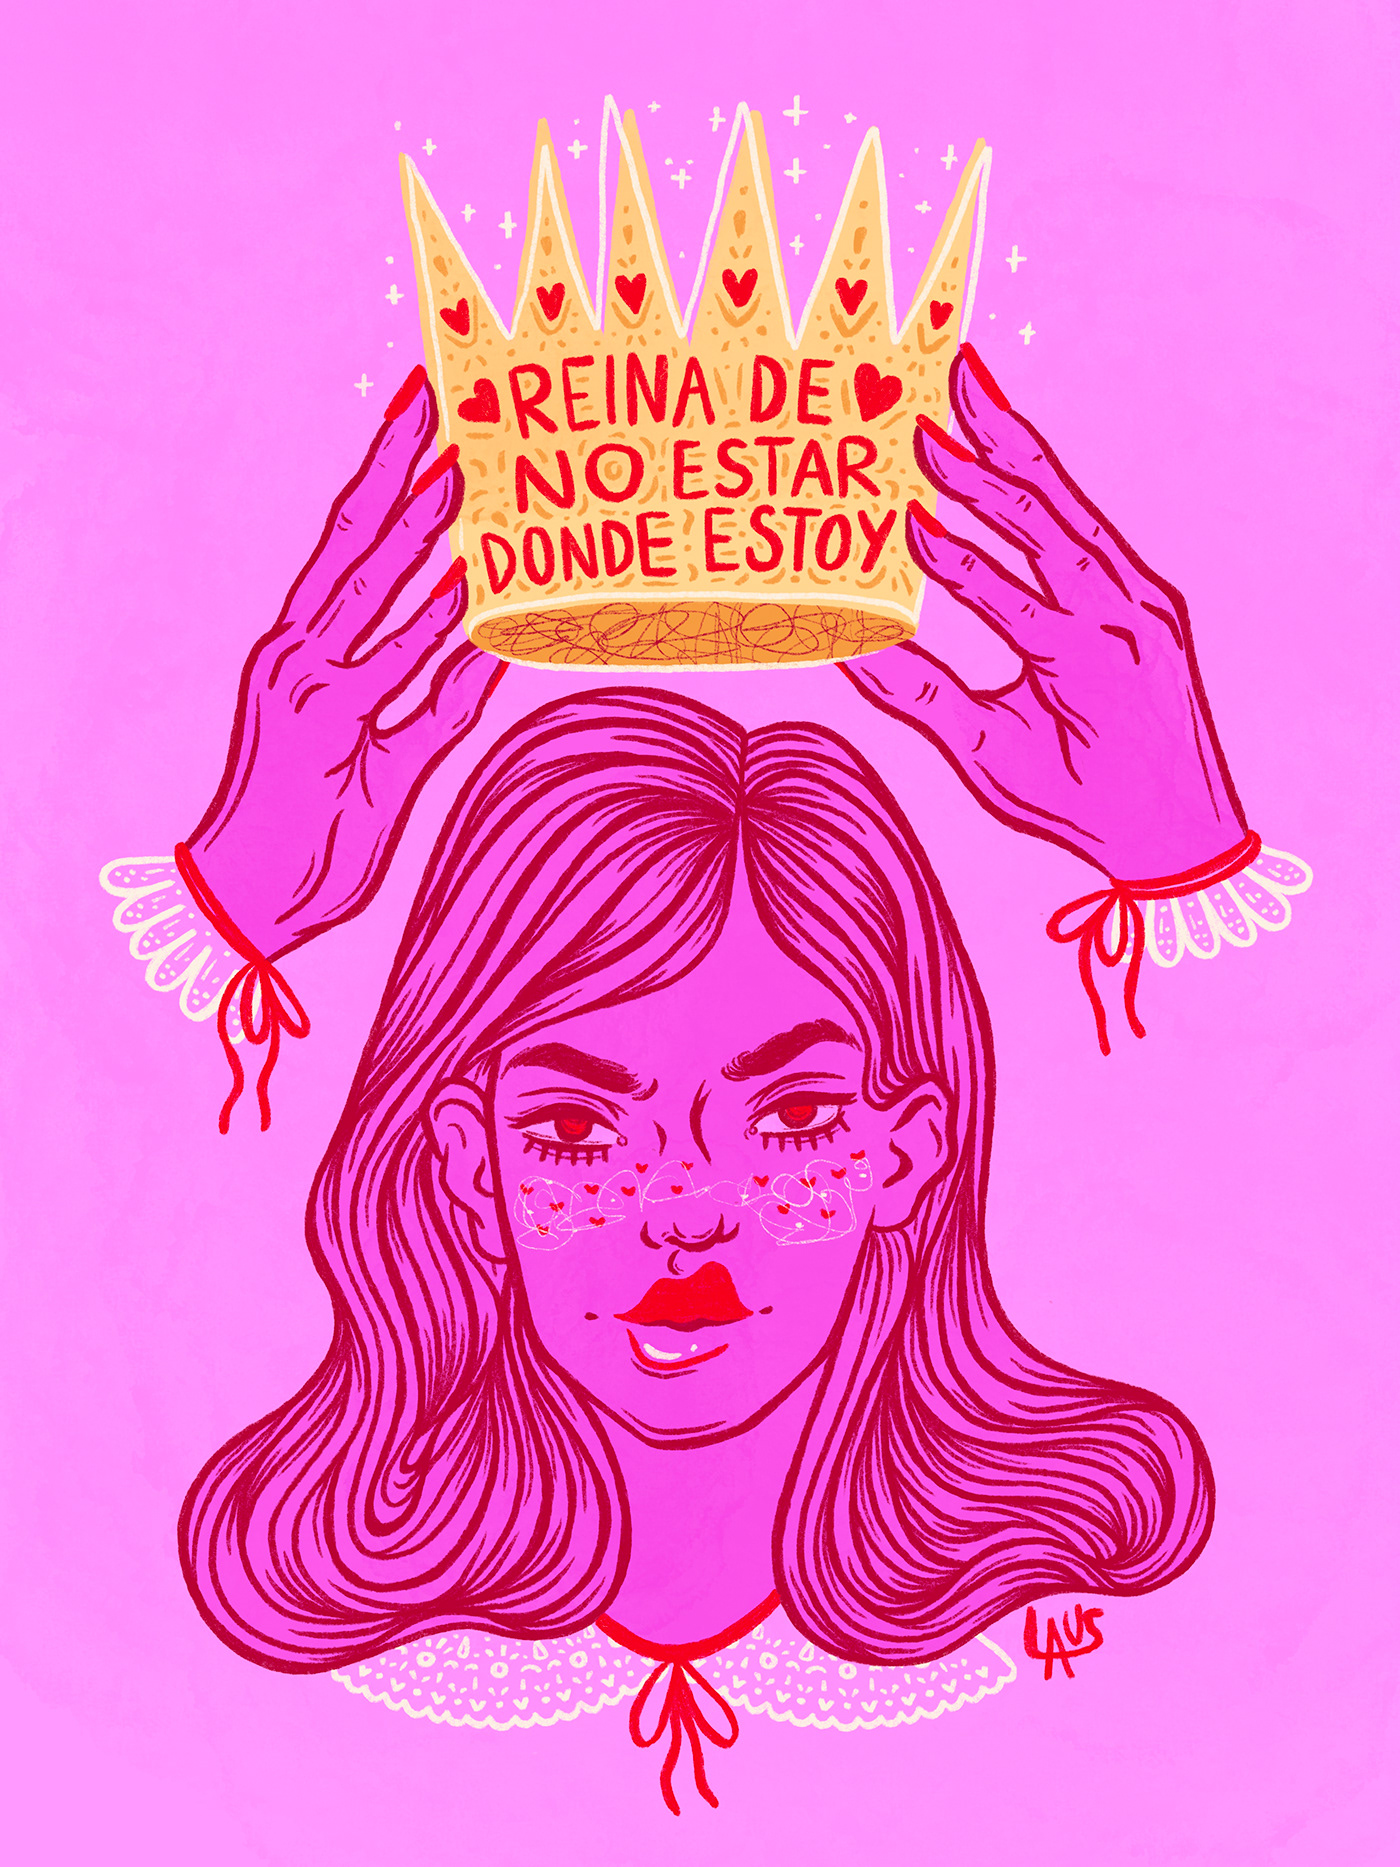 ILLUSTRATION  Ilustradoras mexicanas Laura Gomez Castillo ilustración digital pink laus